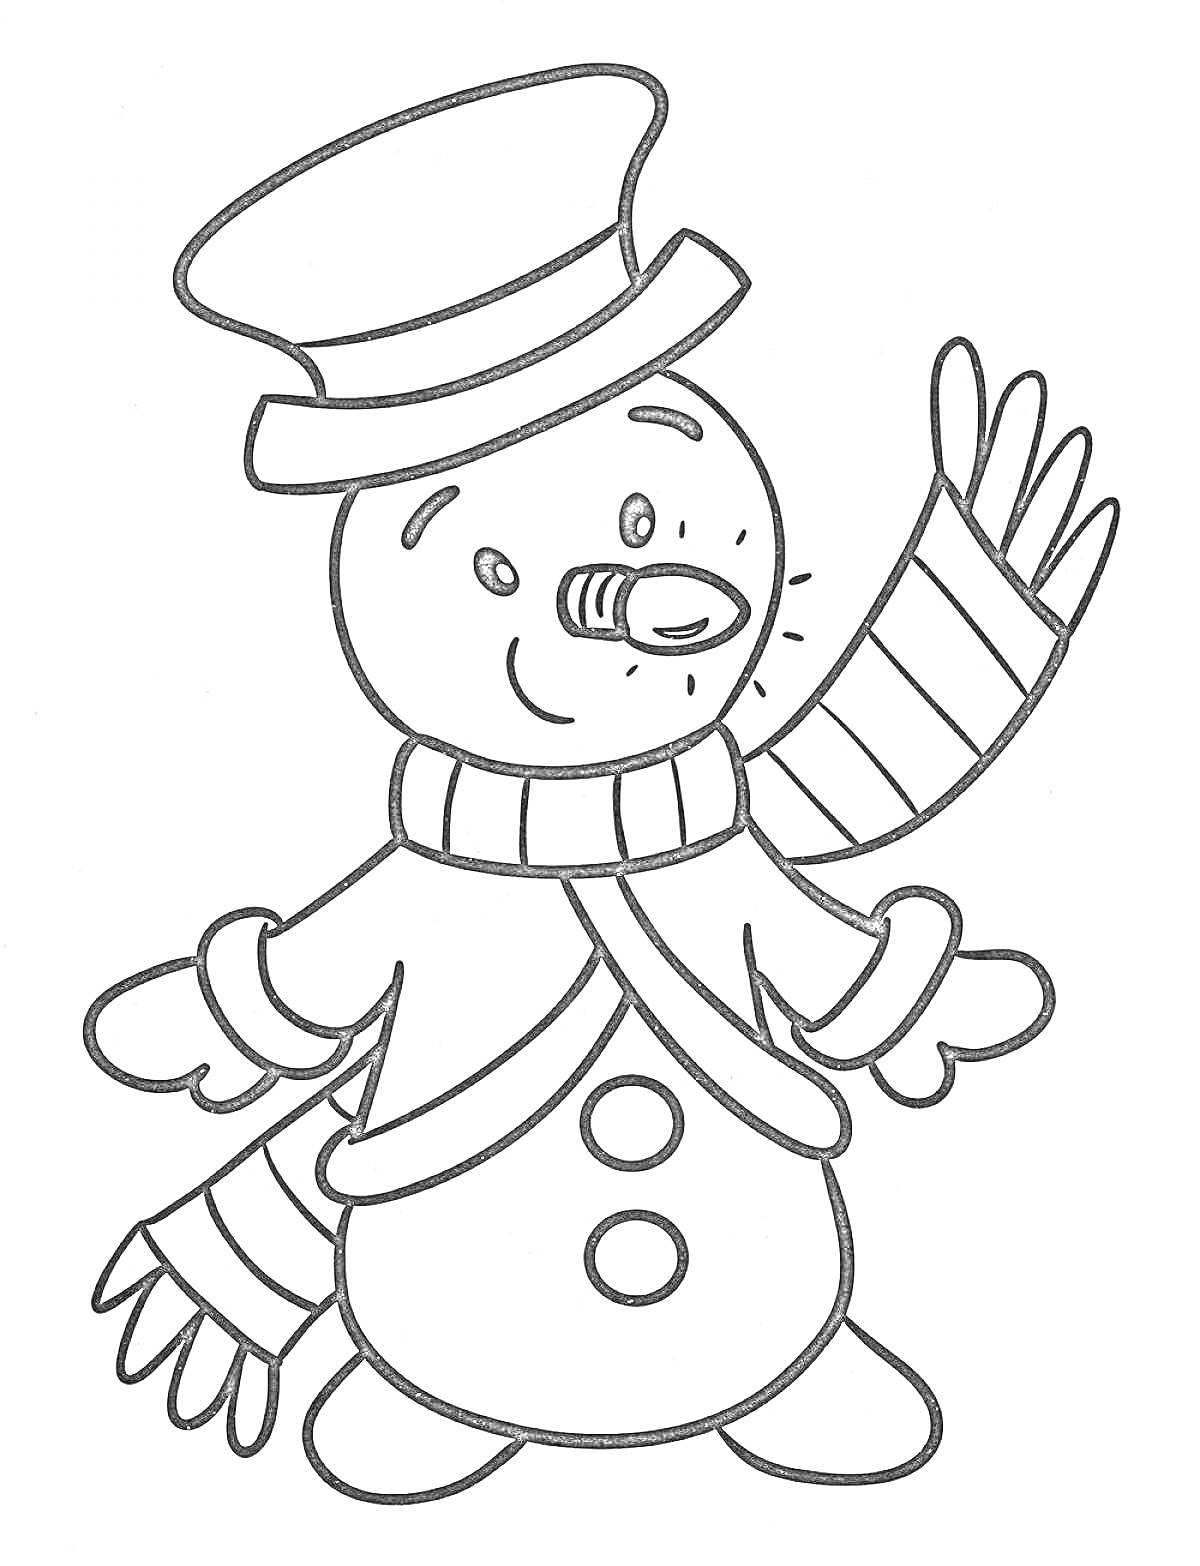 Раскраска Снеговик с шляпой, шарфом и морковкой вместо носа